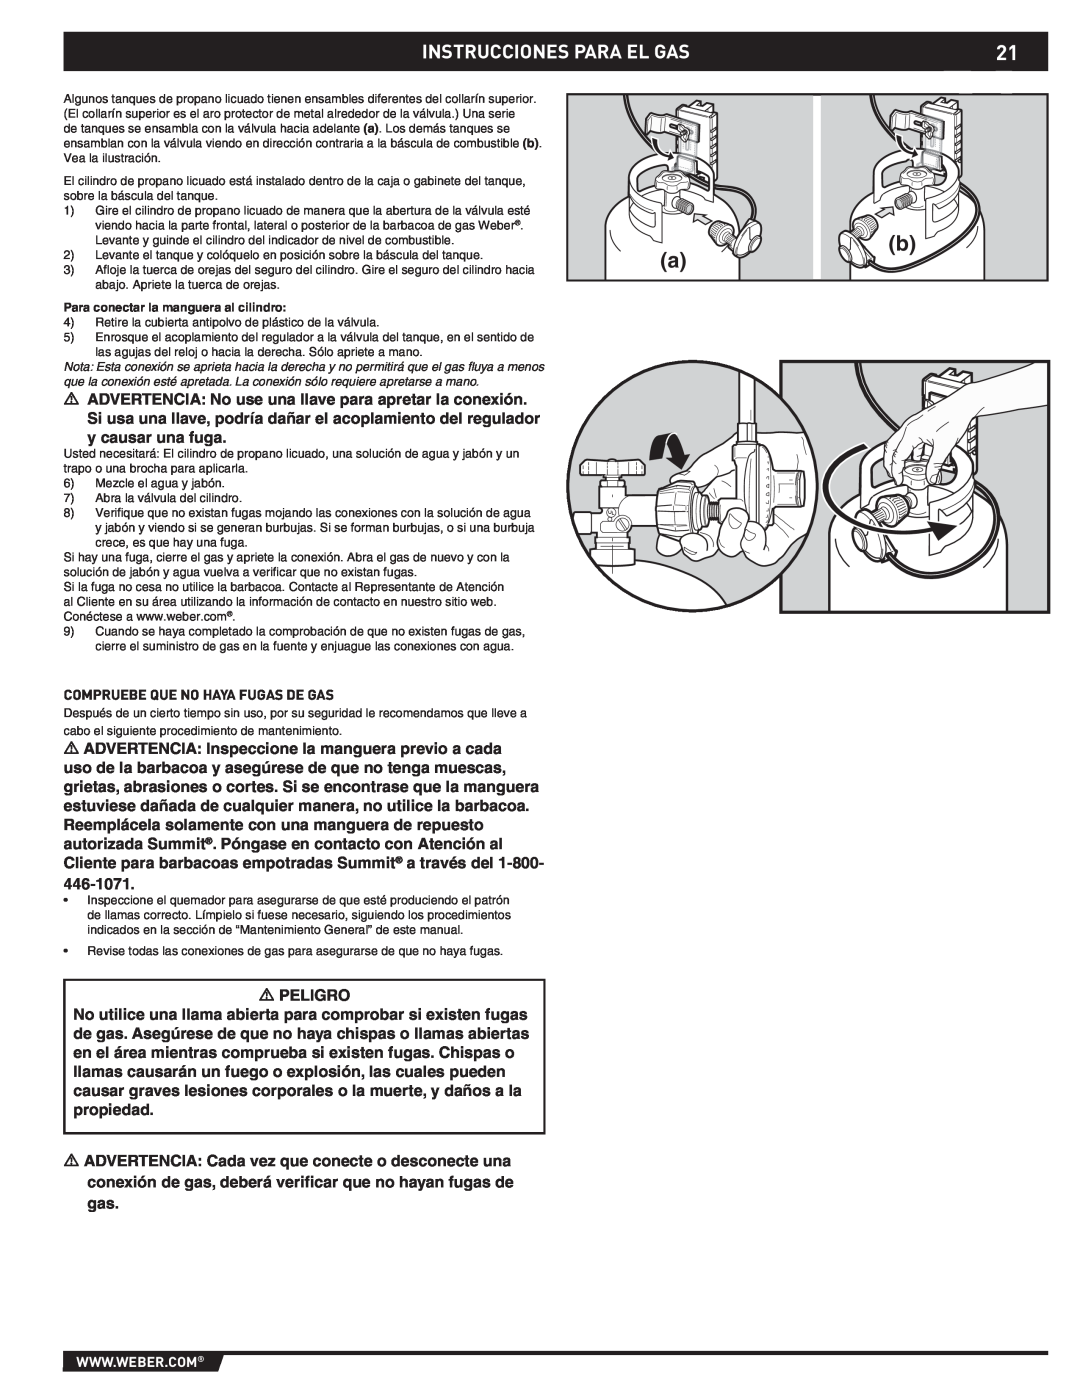 Summit 43176 manual Instrucciones Para El Gas, Peligro 